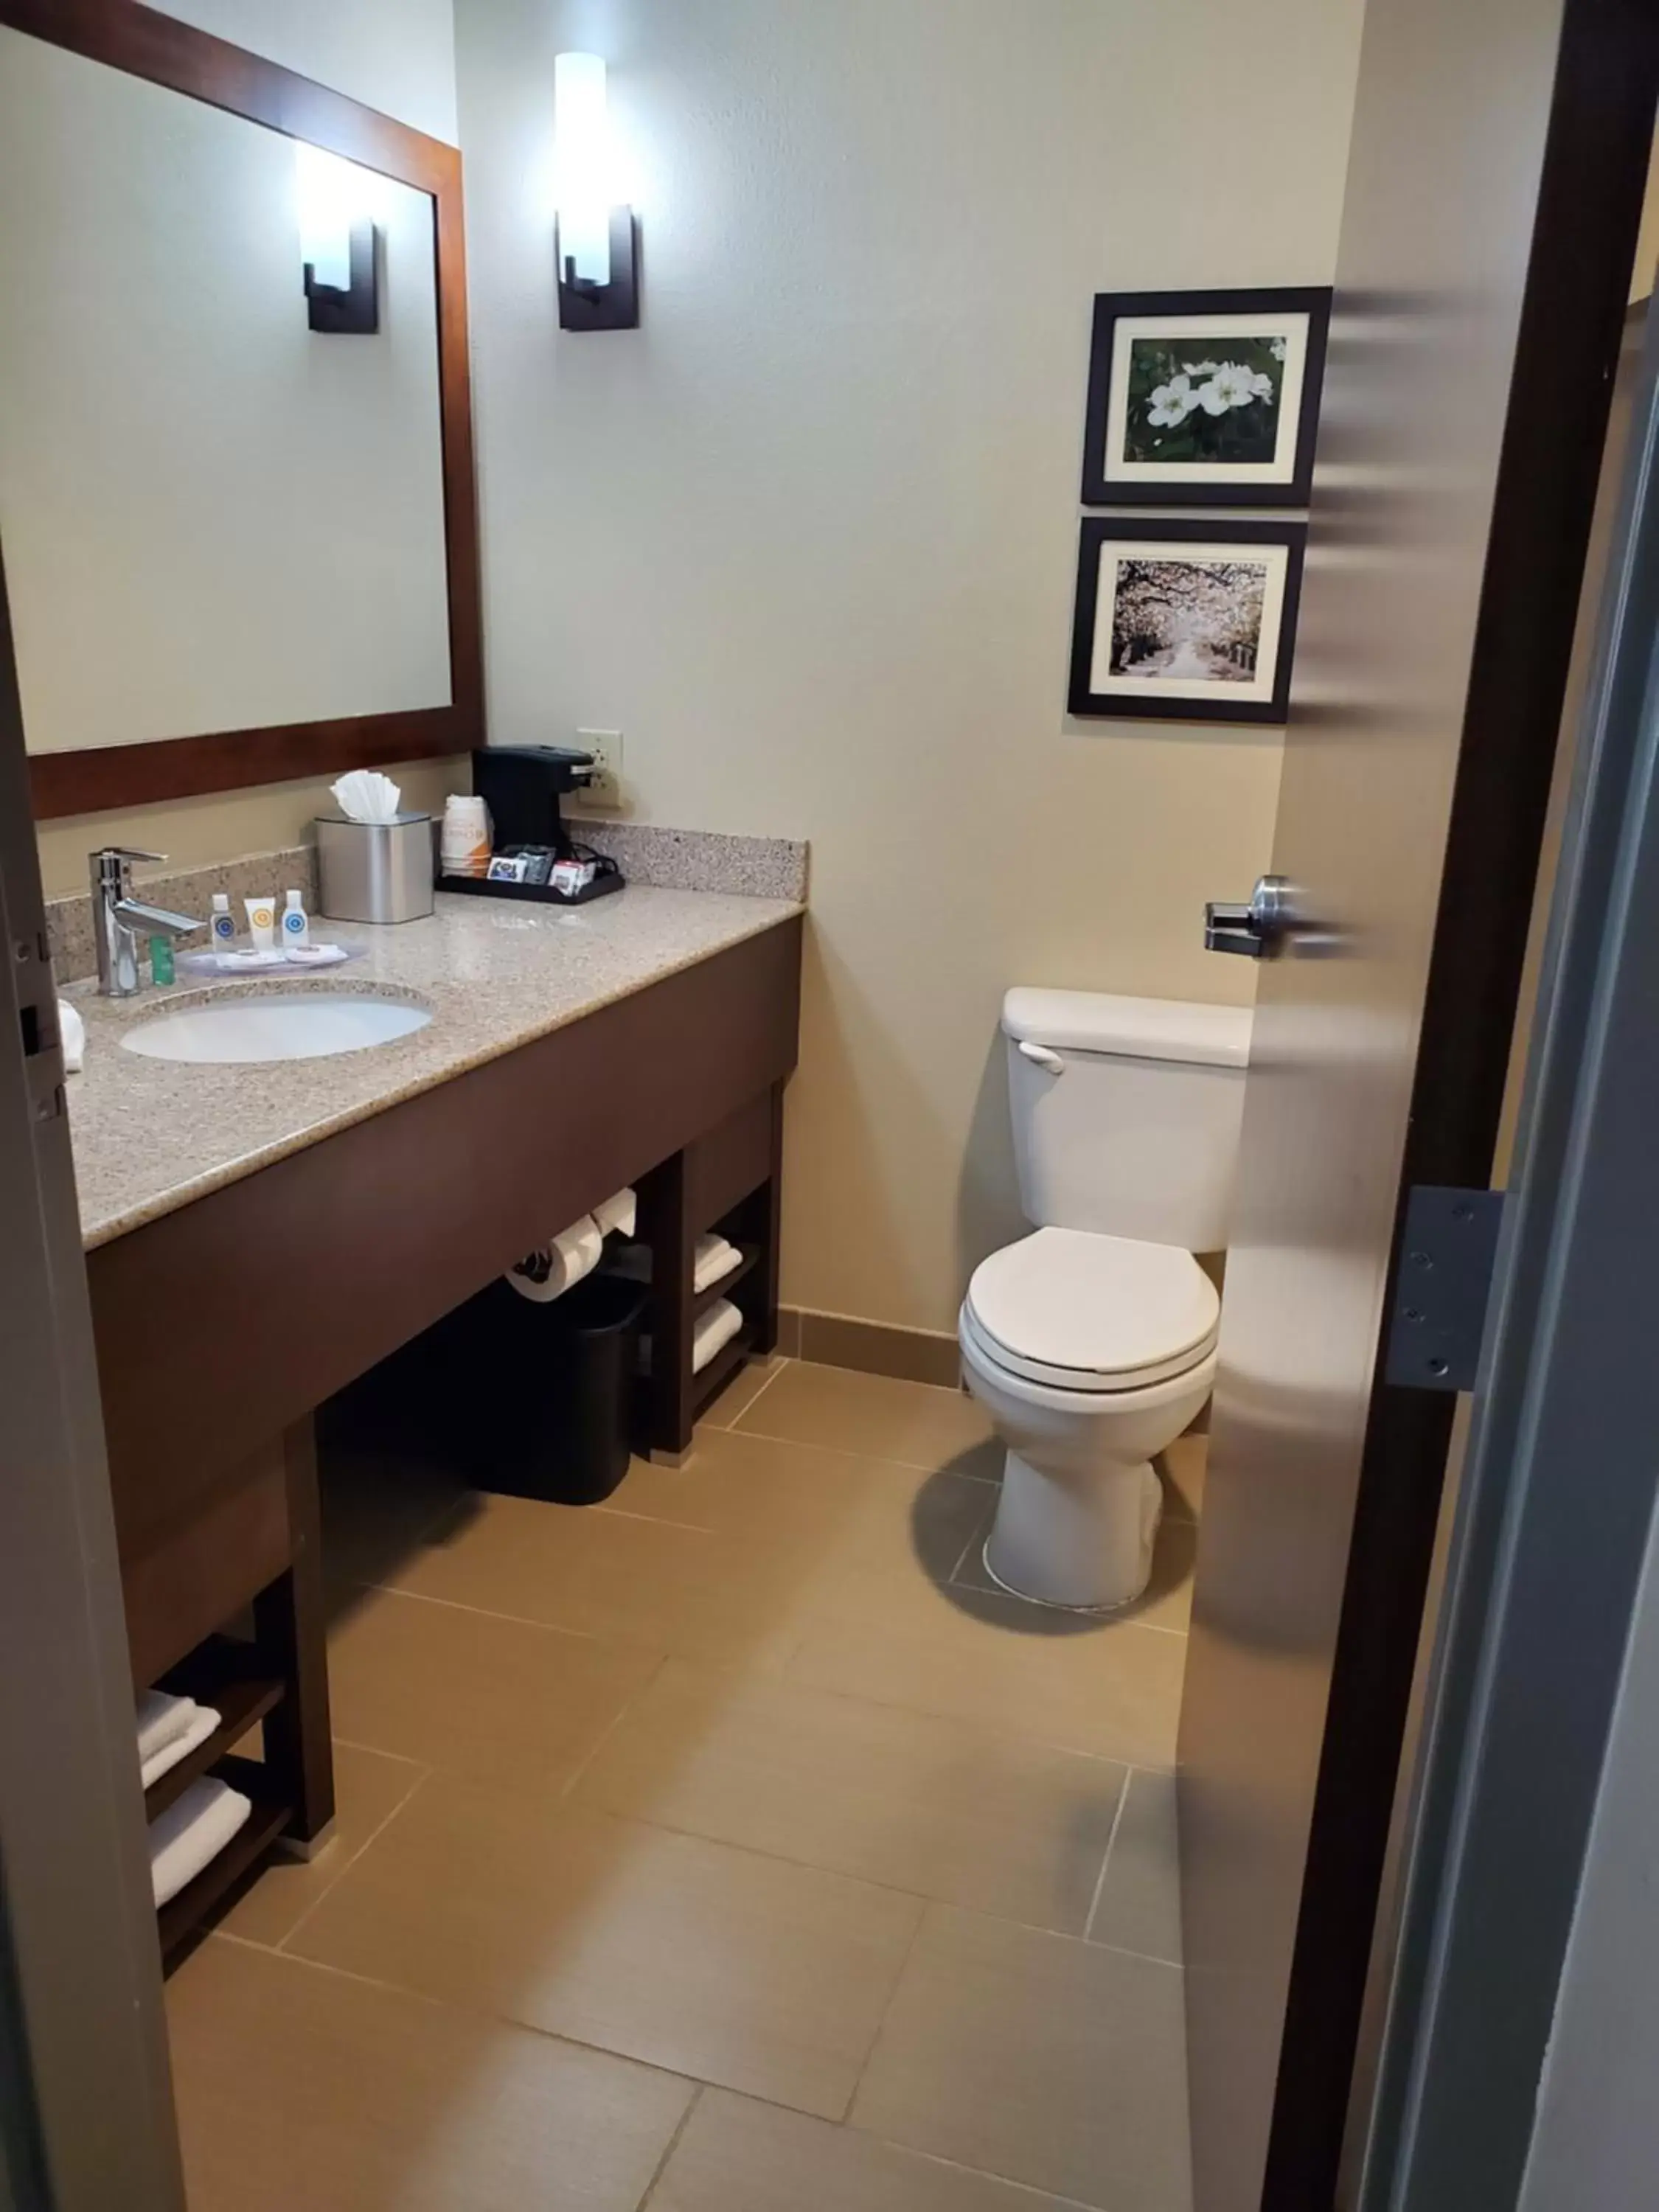 Bathroom in Comfort Suites Little Rock